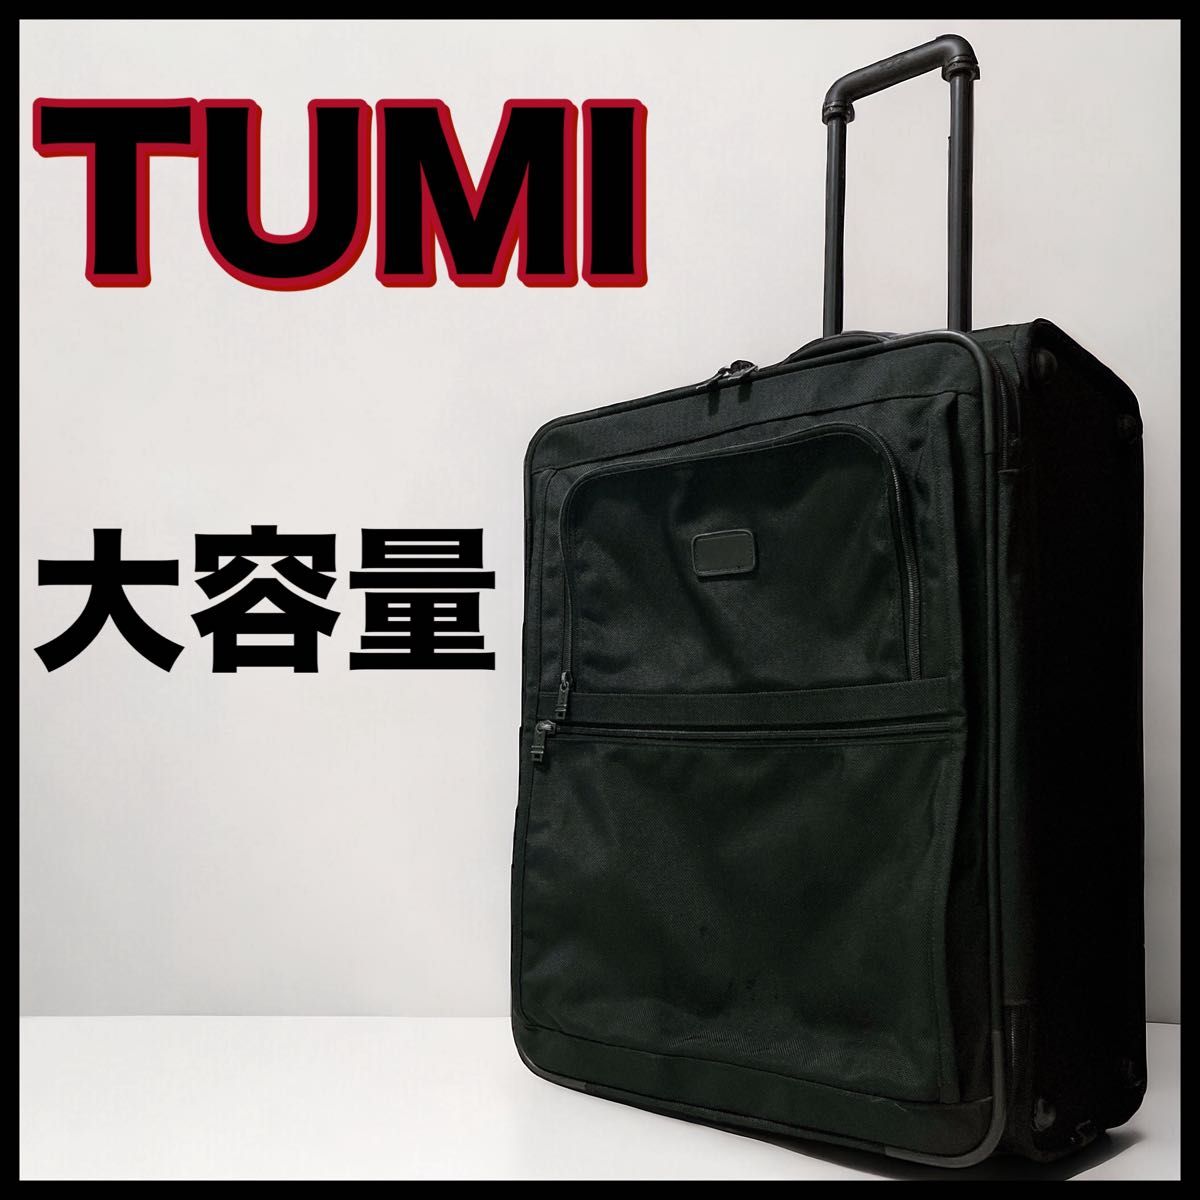 TUMI トゥミ スーツケース キャリーバッグ ガーメント 大きい 容量 2輪